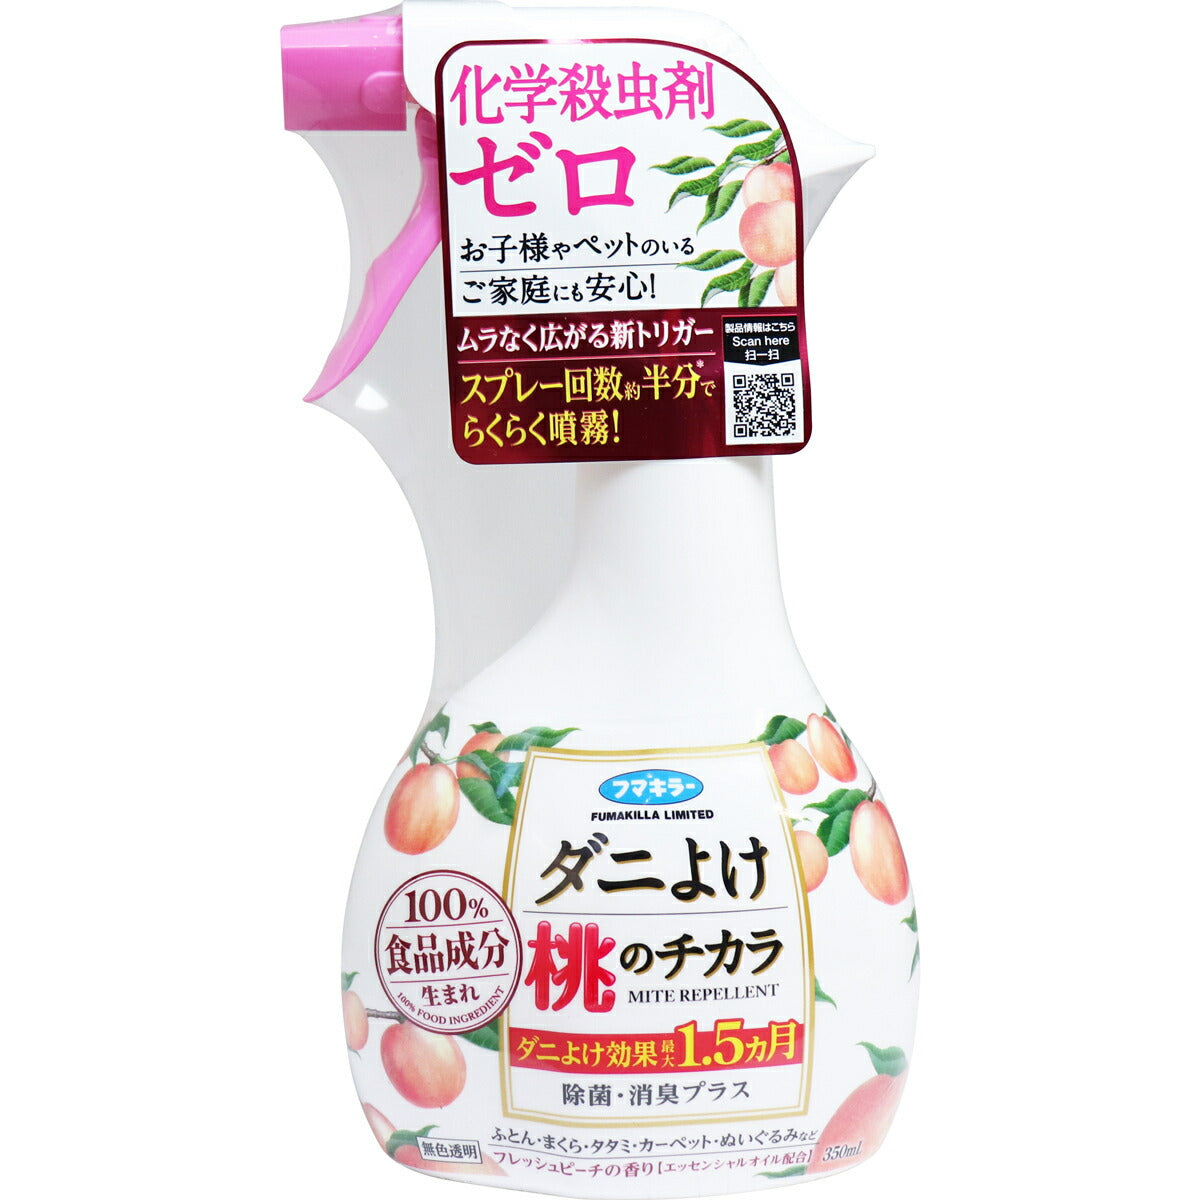 Made in Japan 100% food ingredients Peach Mite Repellent 350ml